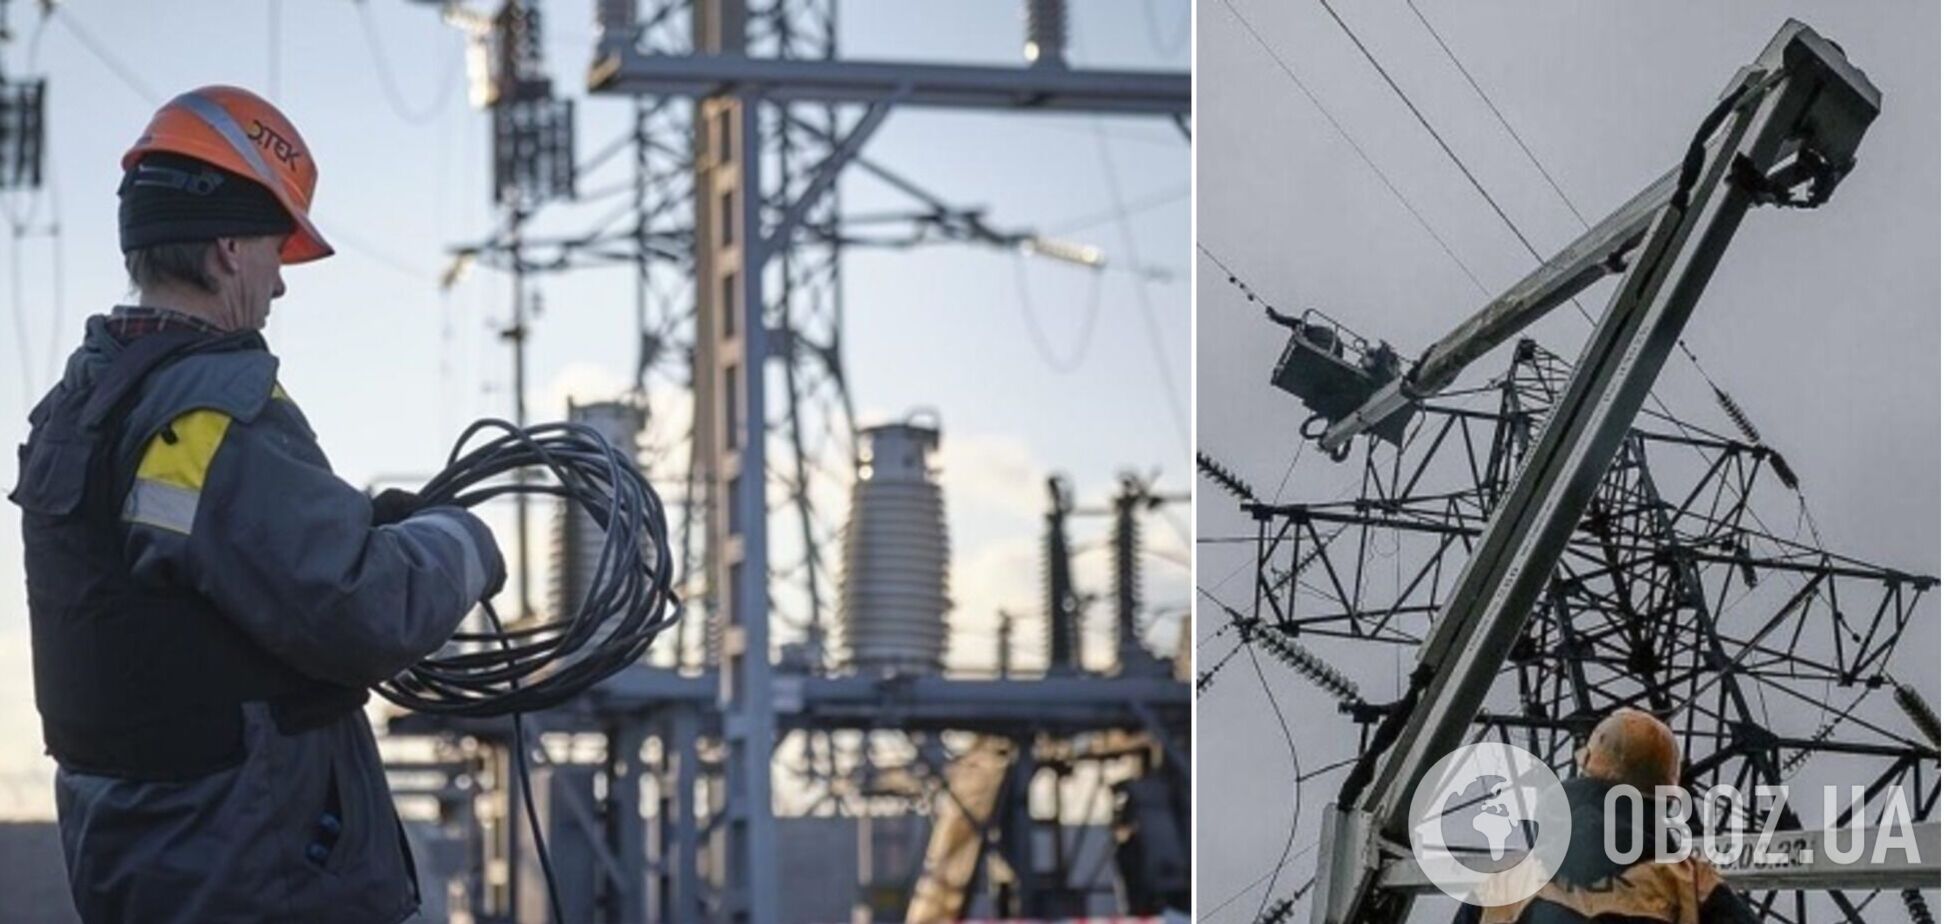 Отсутствие массовых отключений света в Украине не означает отсутствия проблем в энергосистеме, – Прокип